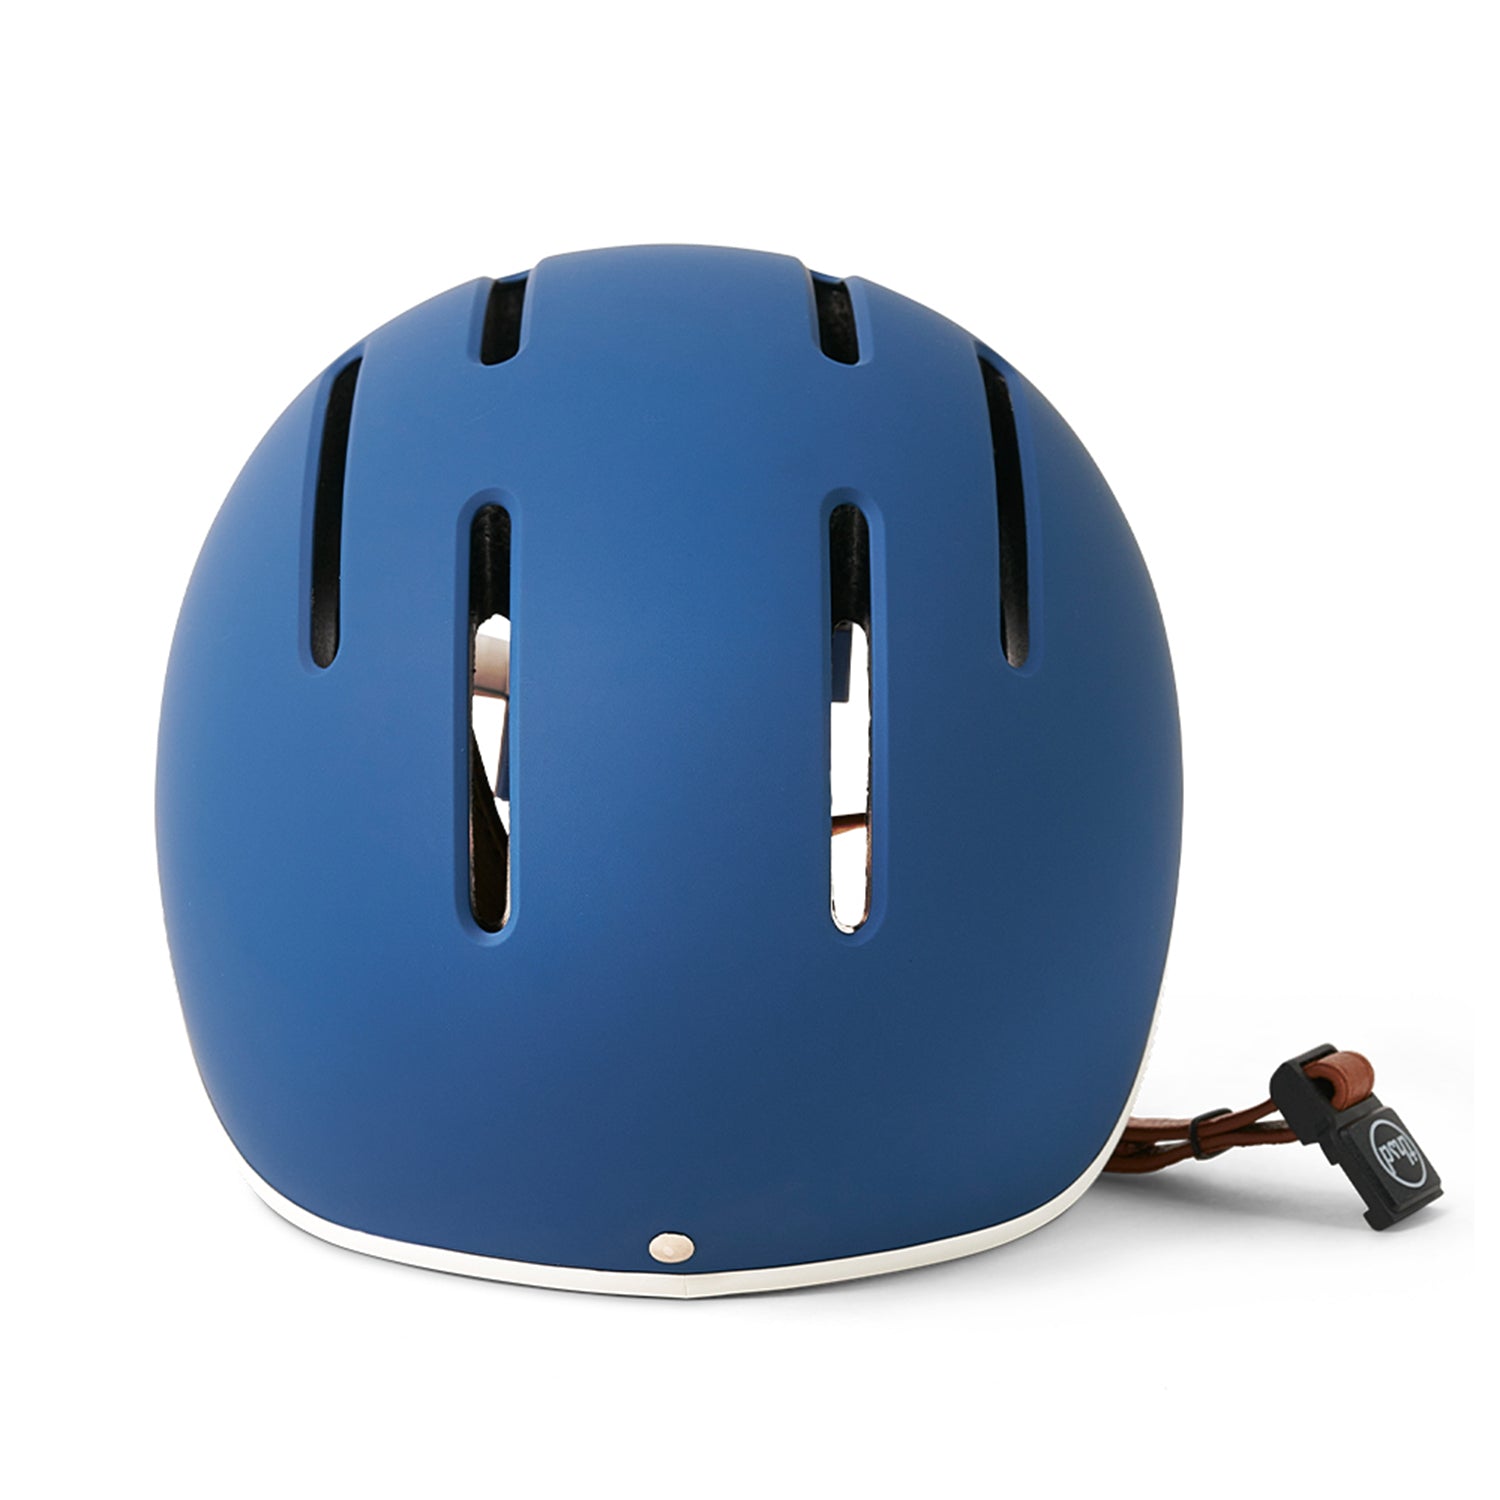 Thousand Jr. Helmet - GOTRAX